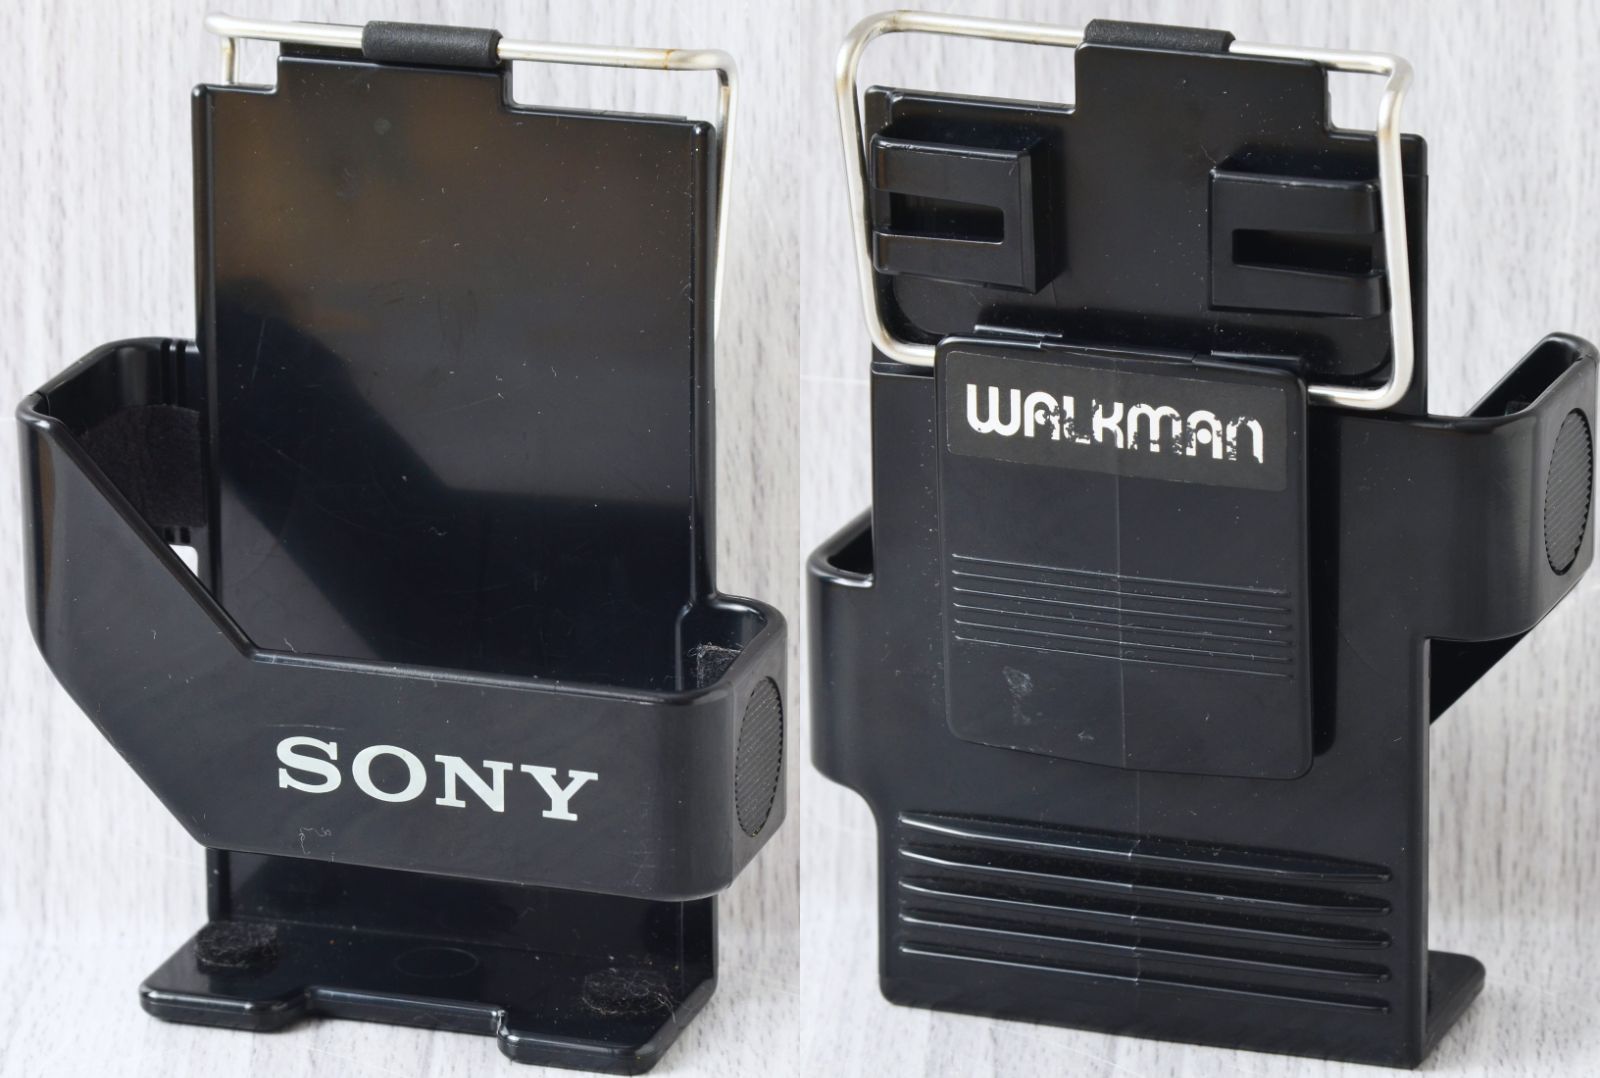 美品! SONY WALKMAN WM-2 赤 ケース付 修理・整備済 完動品